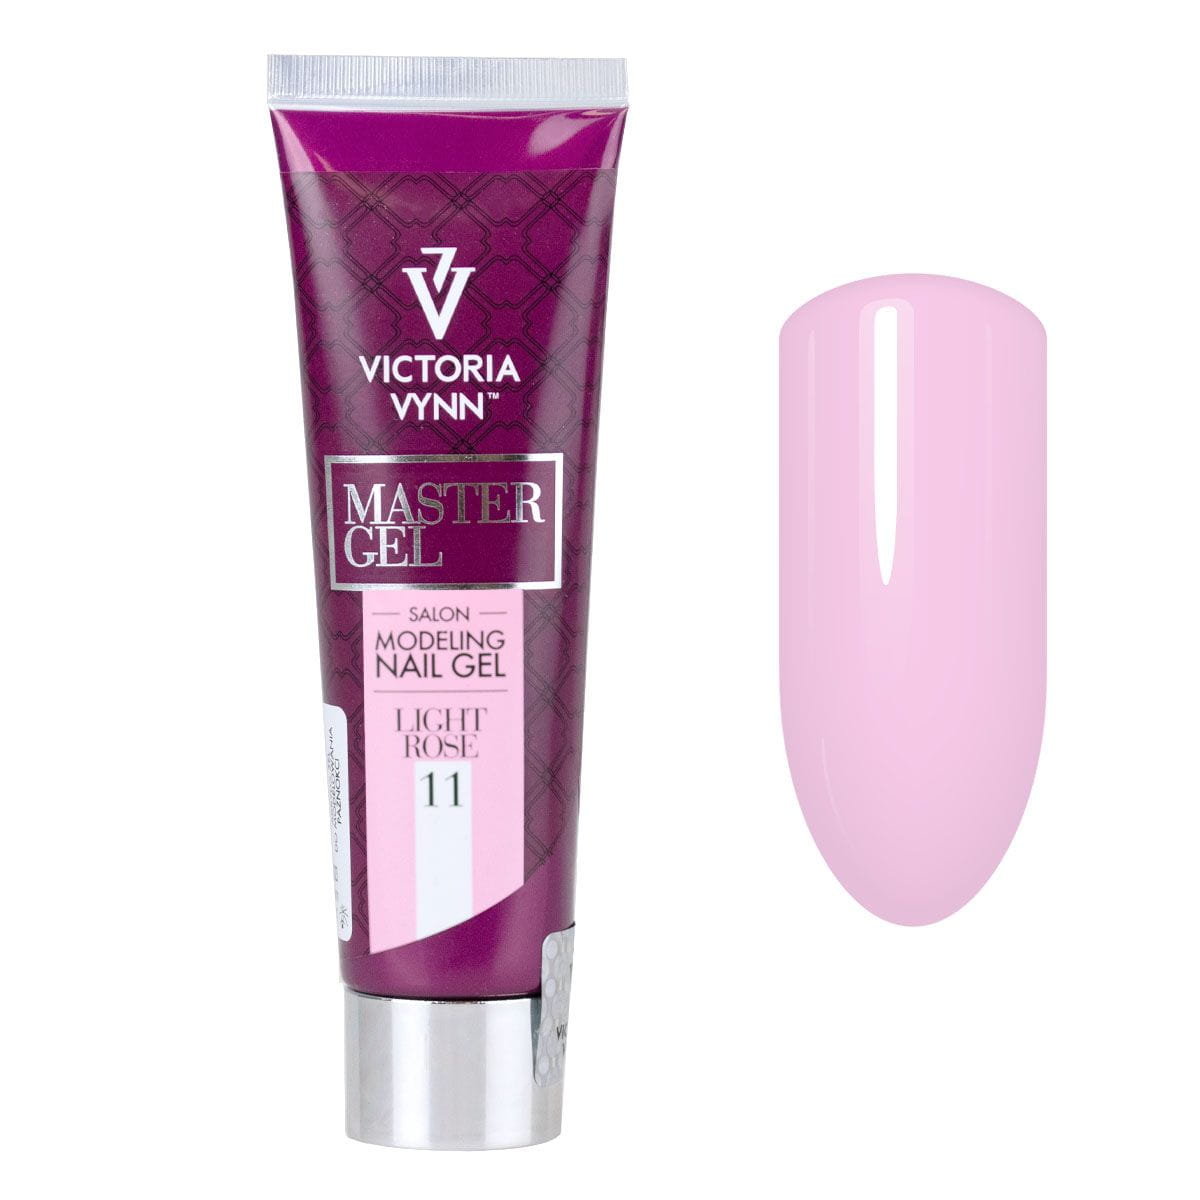 Victoria Vynn Master Gel Light Rose 11 VICTORIA VYNN - 60 g 330924